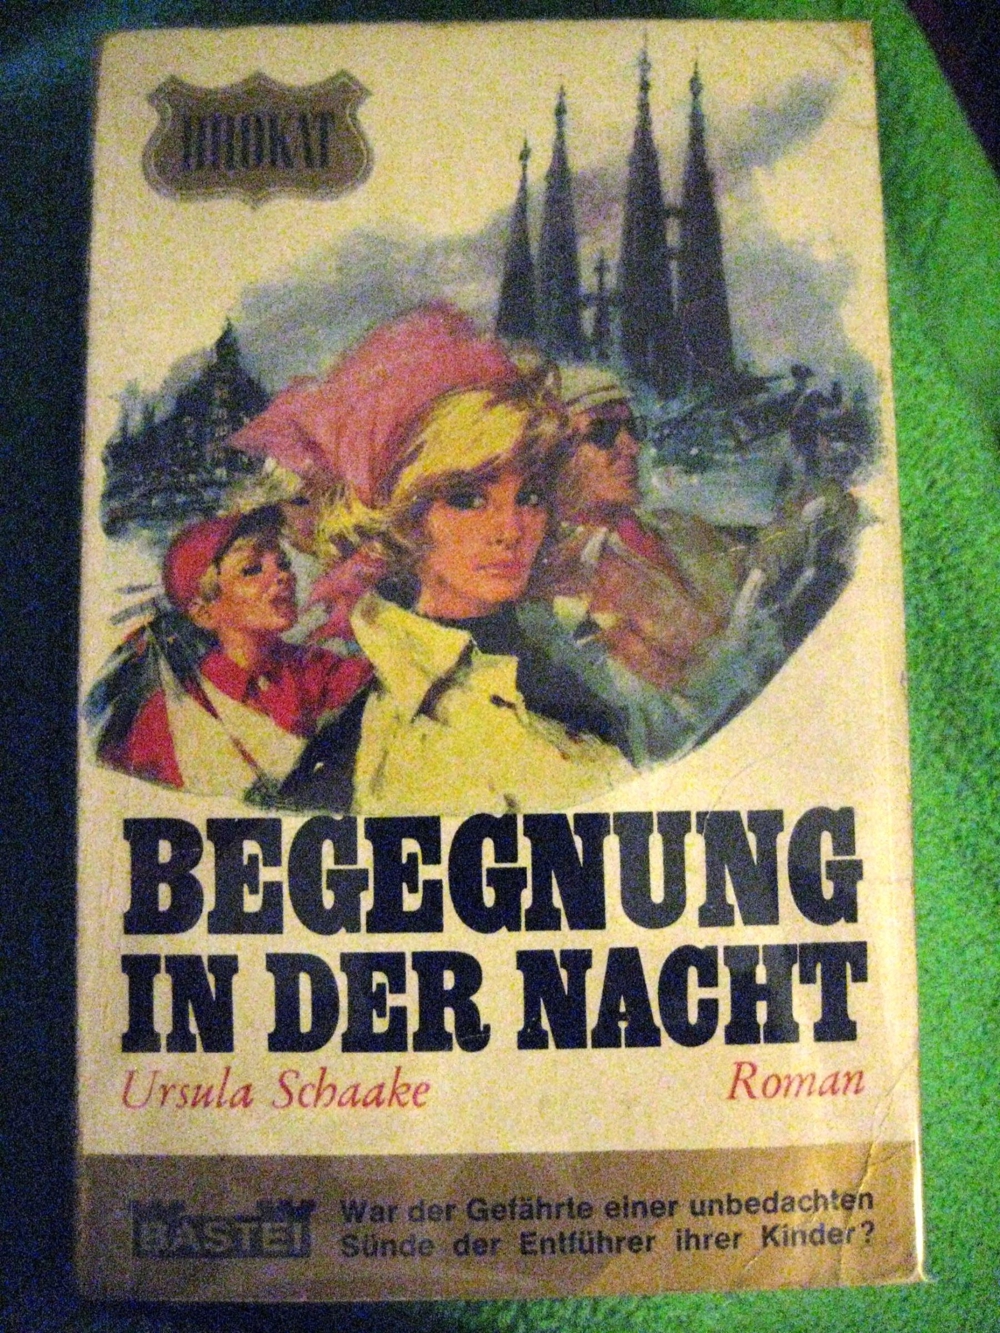 Spannender Roman Begegnung in der Nacht von Ursula Schaake in gutem Zustand, 171 Seiten, BASTEI